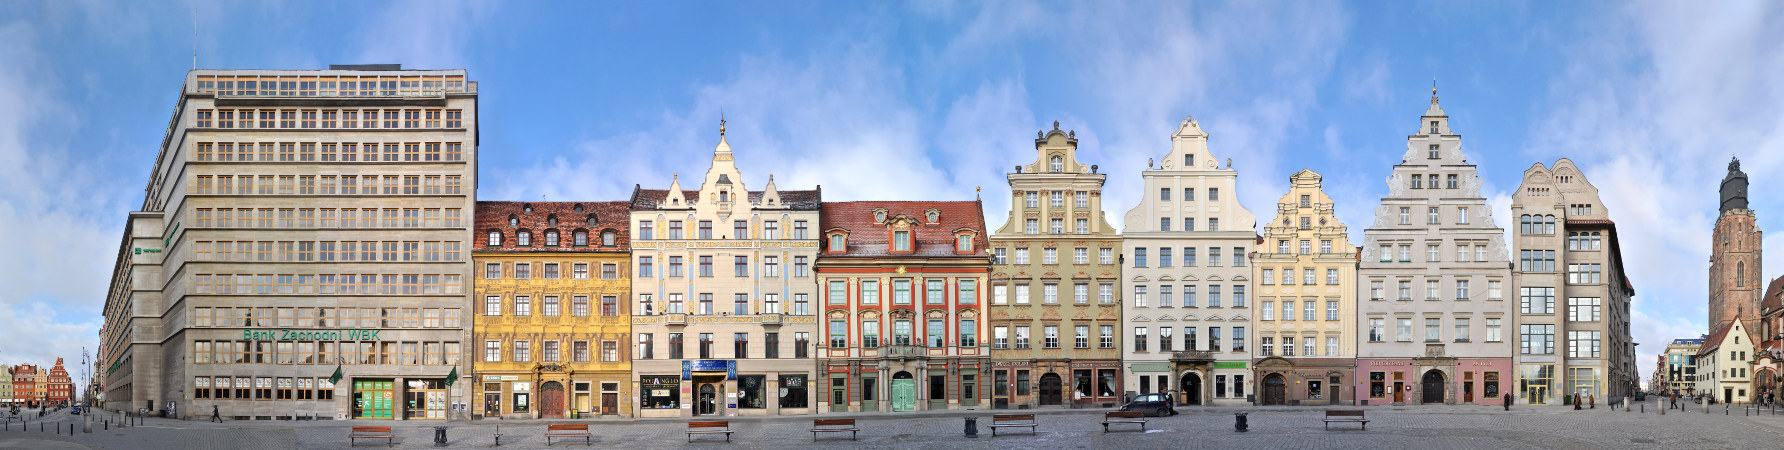 Architecture Wroclaw Rynekl